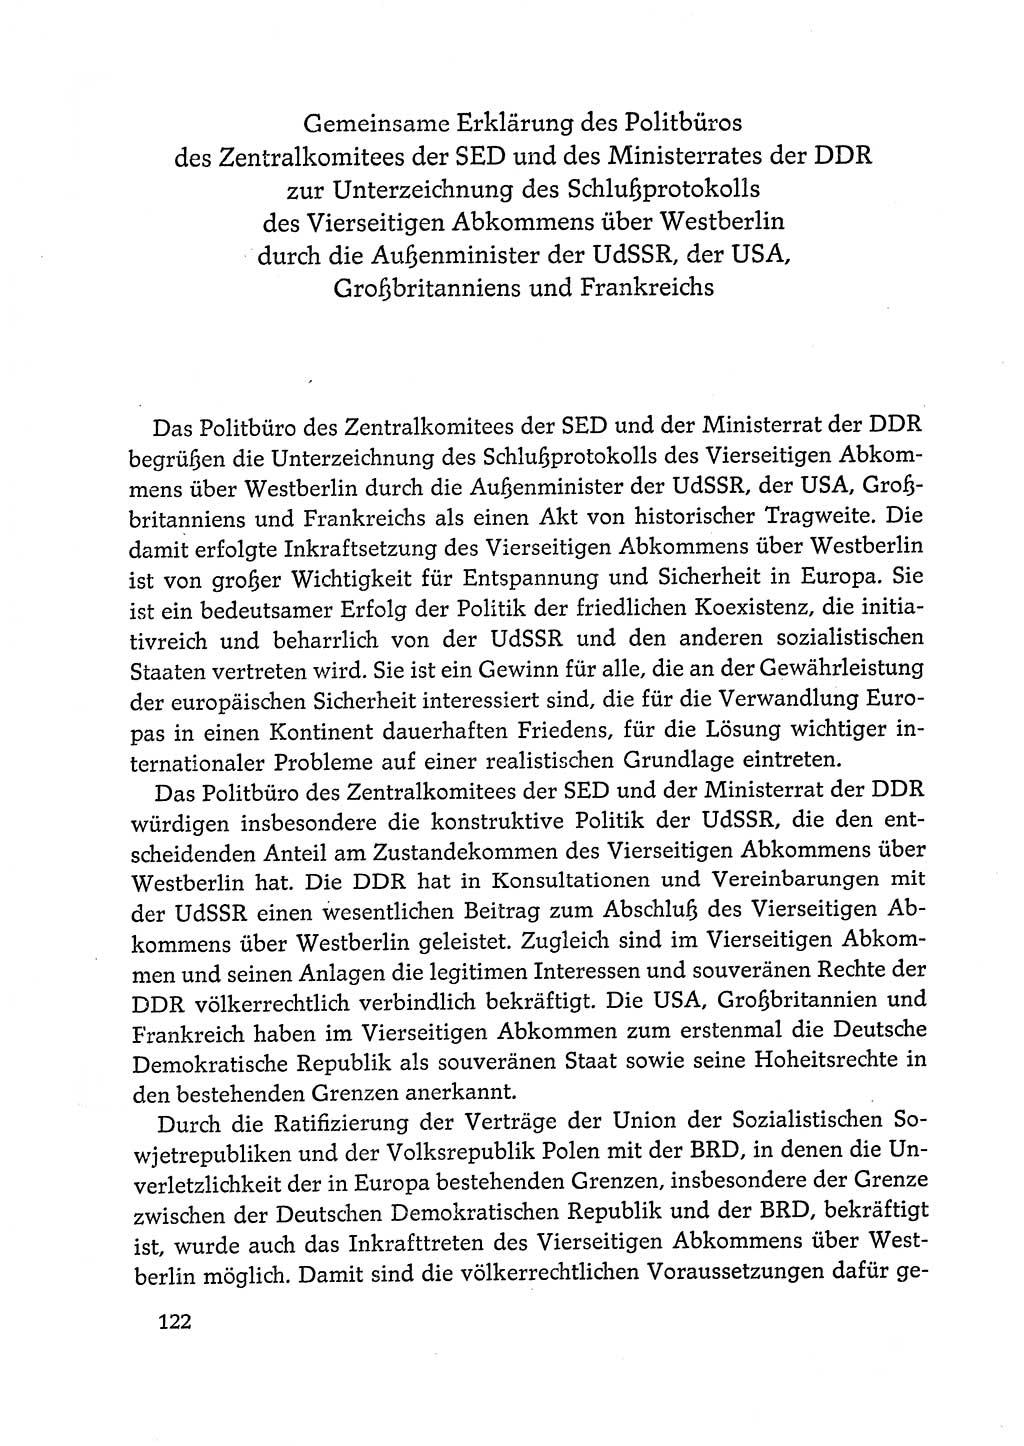 Dokumente der Sozialistischen Einheitspartei Deutschlands (SED) [Deutsche Demokratische Republik (DDR)] 1972-1973, Seite 122 (Dok. SED DDR 1972-1973, S. 122)